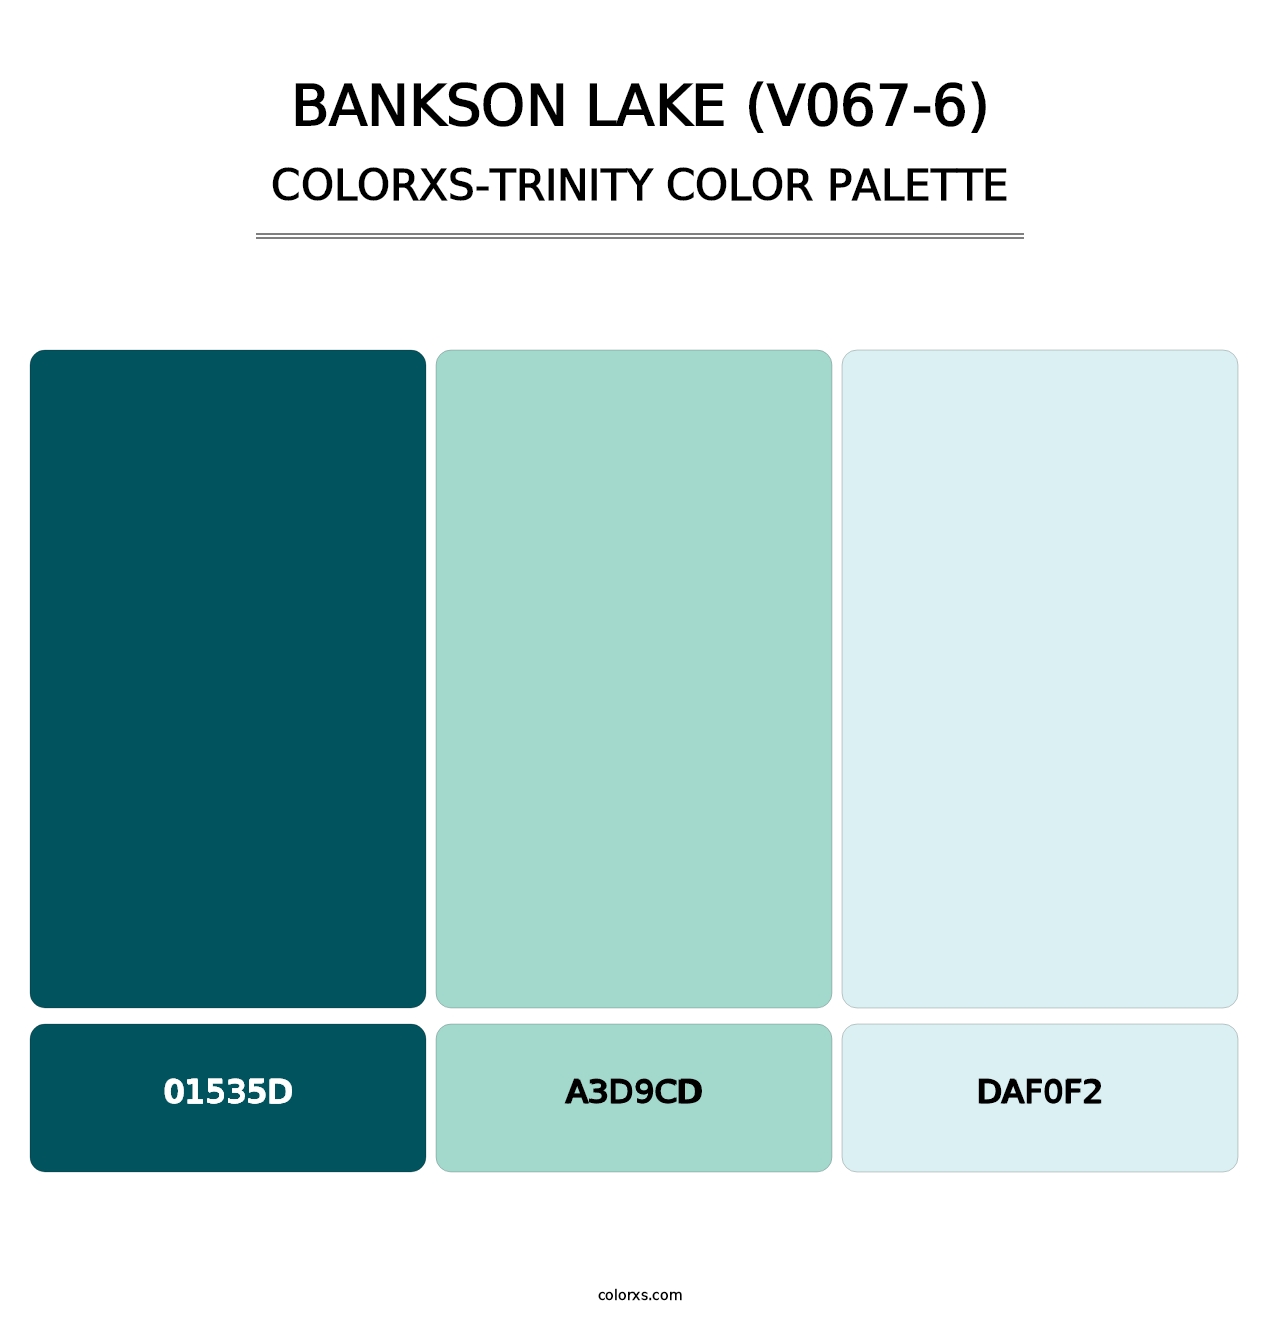 Bankson Lake (V067-6) - Colorxs Trinity Palette